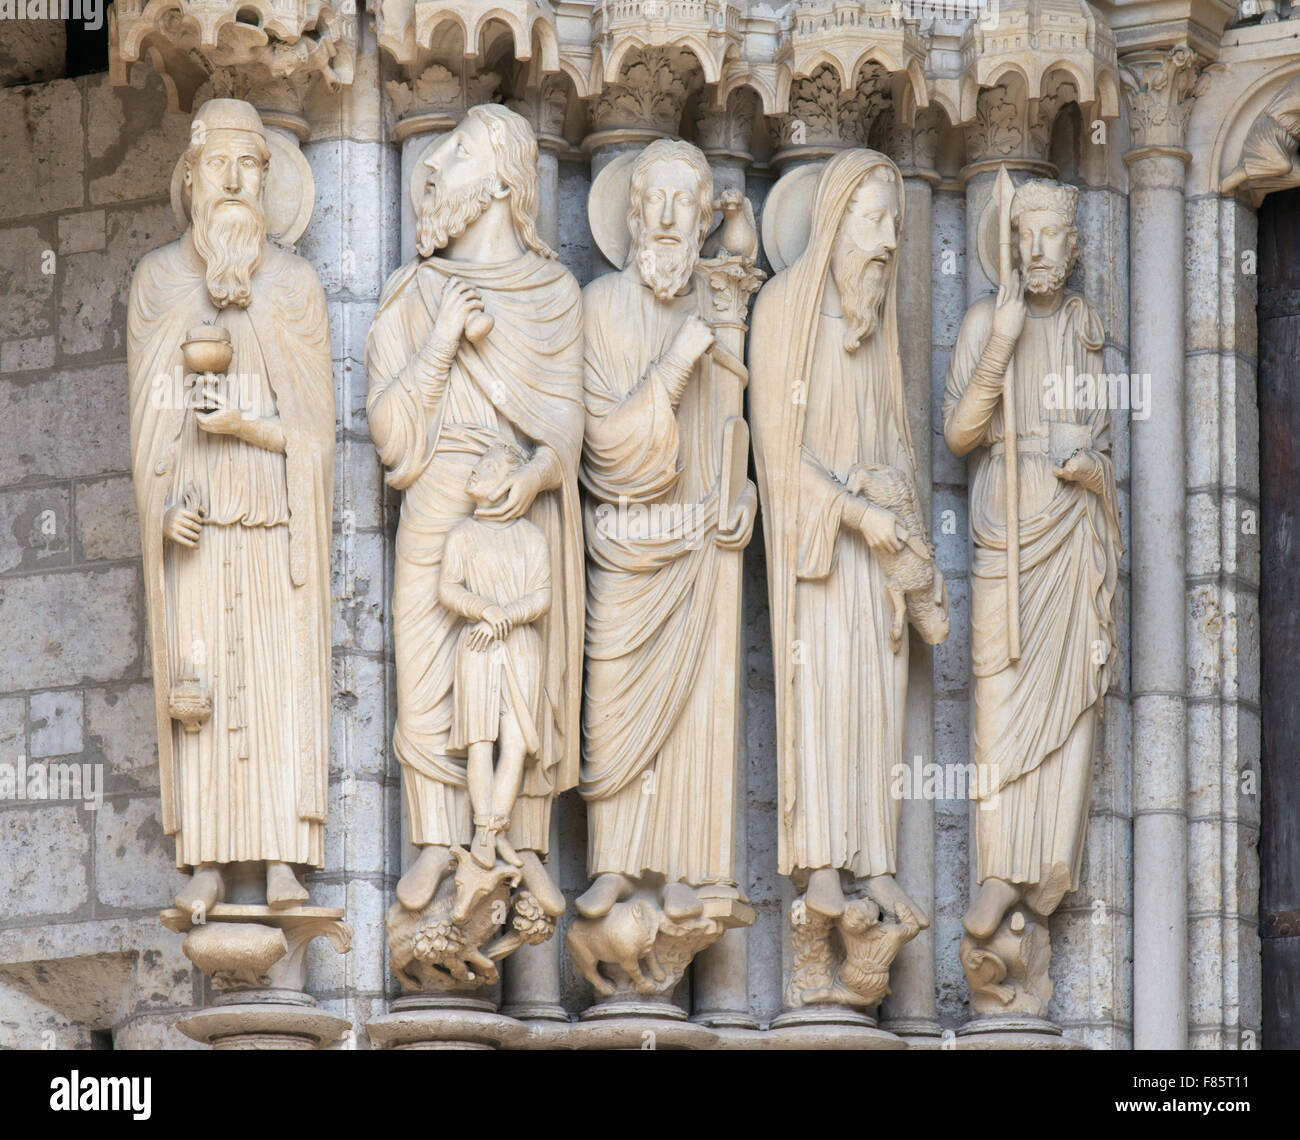 Jambage gauche du porche, des statues de la cathédrale de Chartres, Eure-et-Loir, France, Europe Banque D'Images